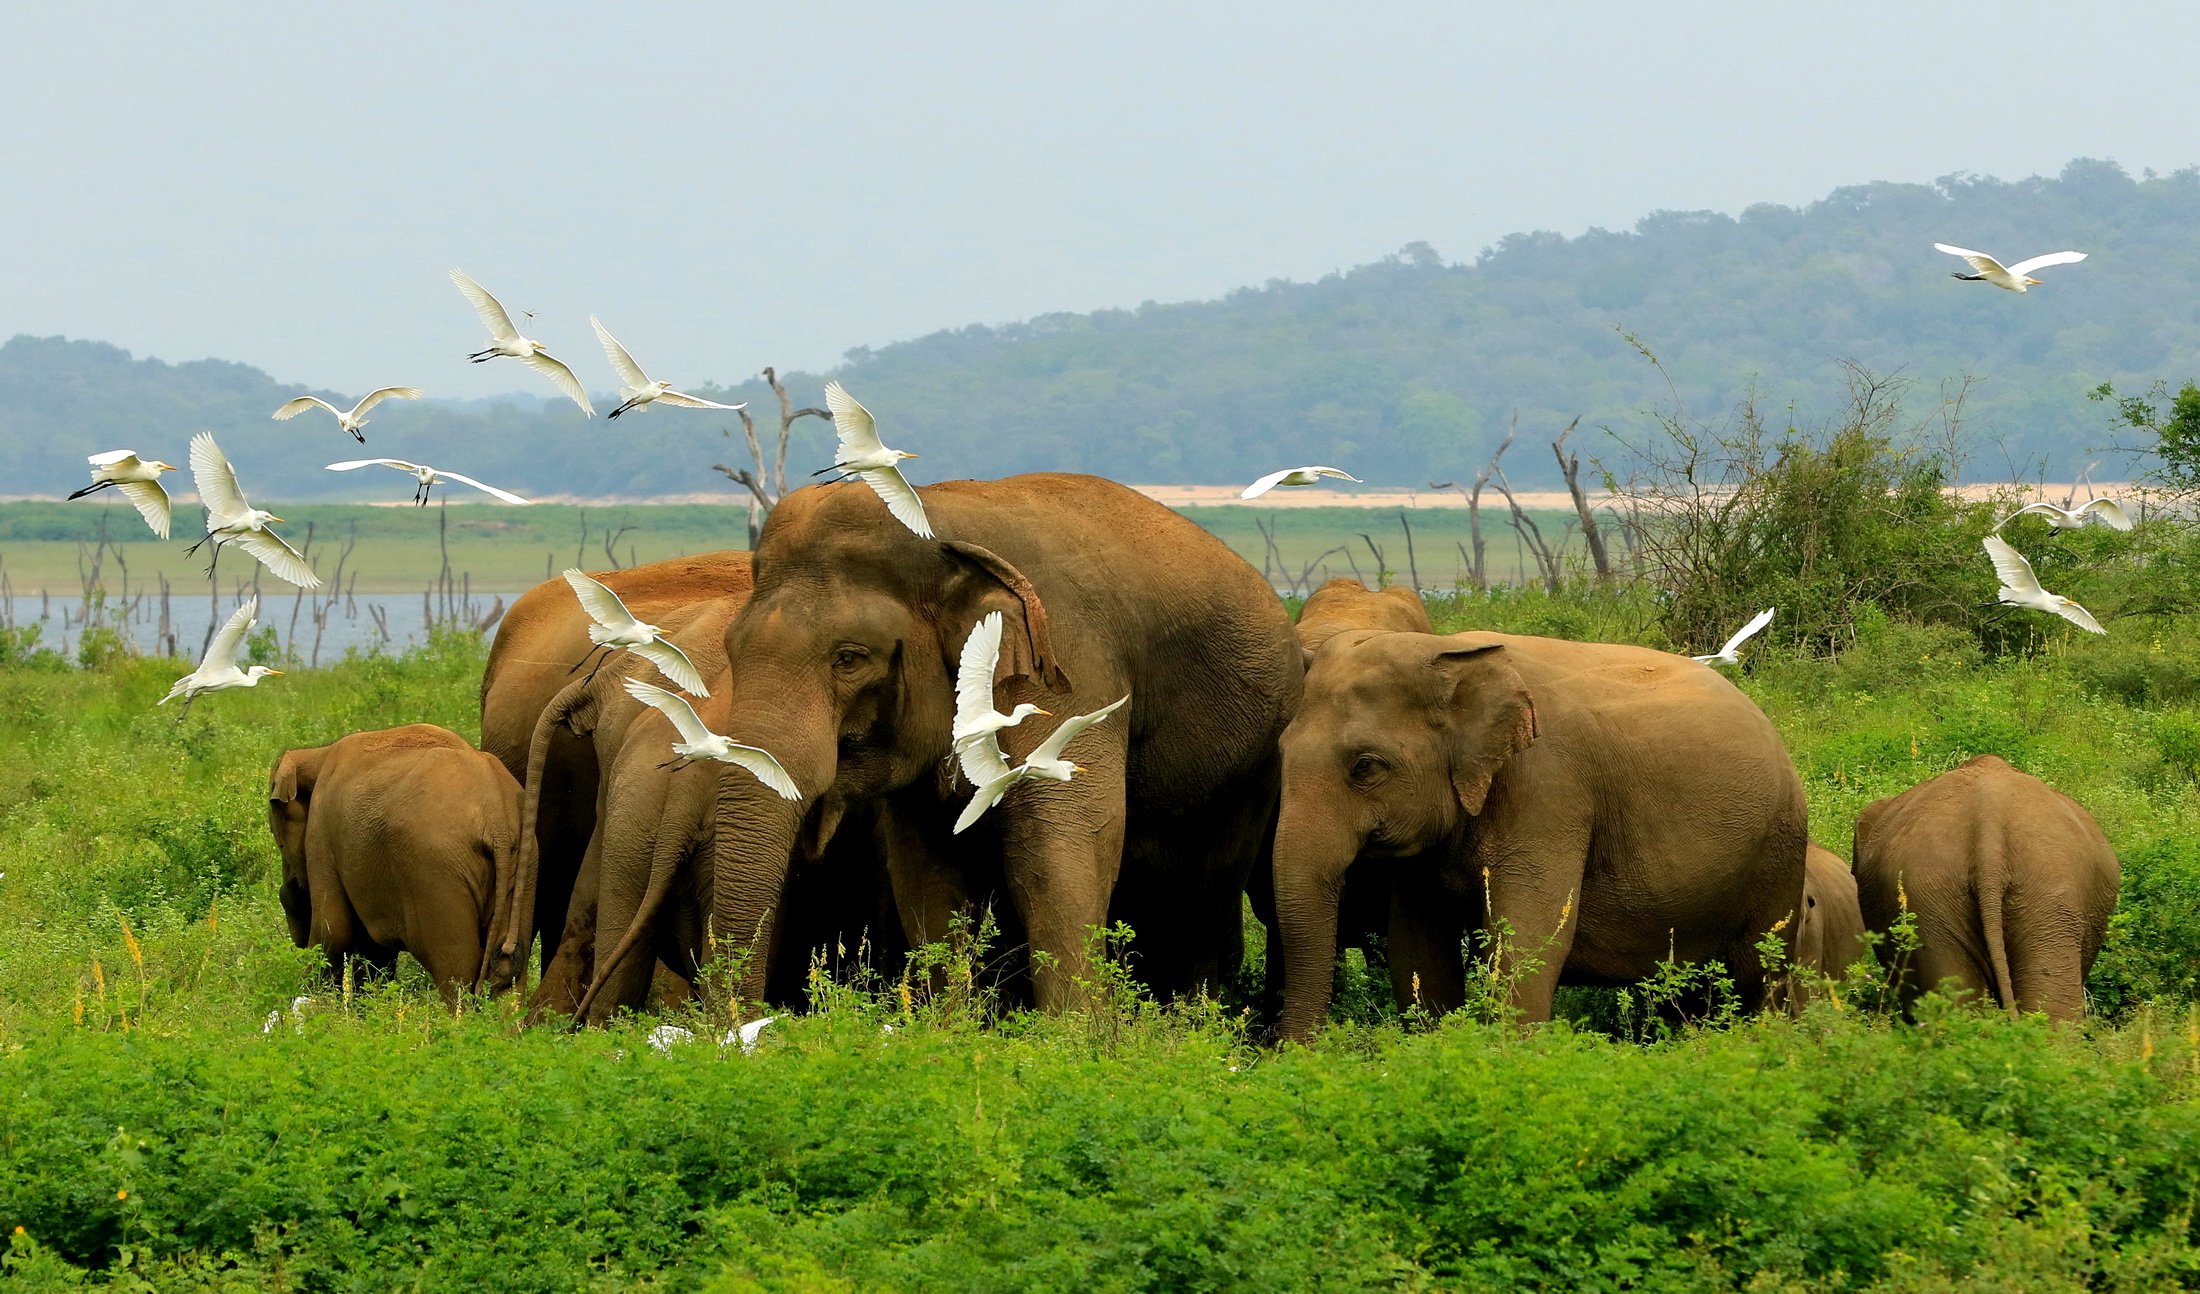 斯里兰卡旅游新宣传片视角独特 让人们跟随奇妙的野生动物去旅行